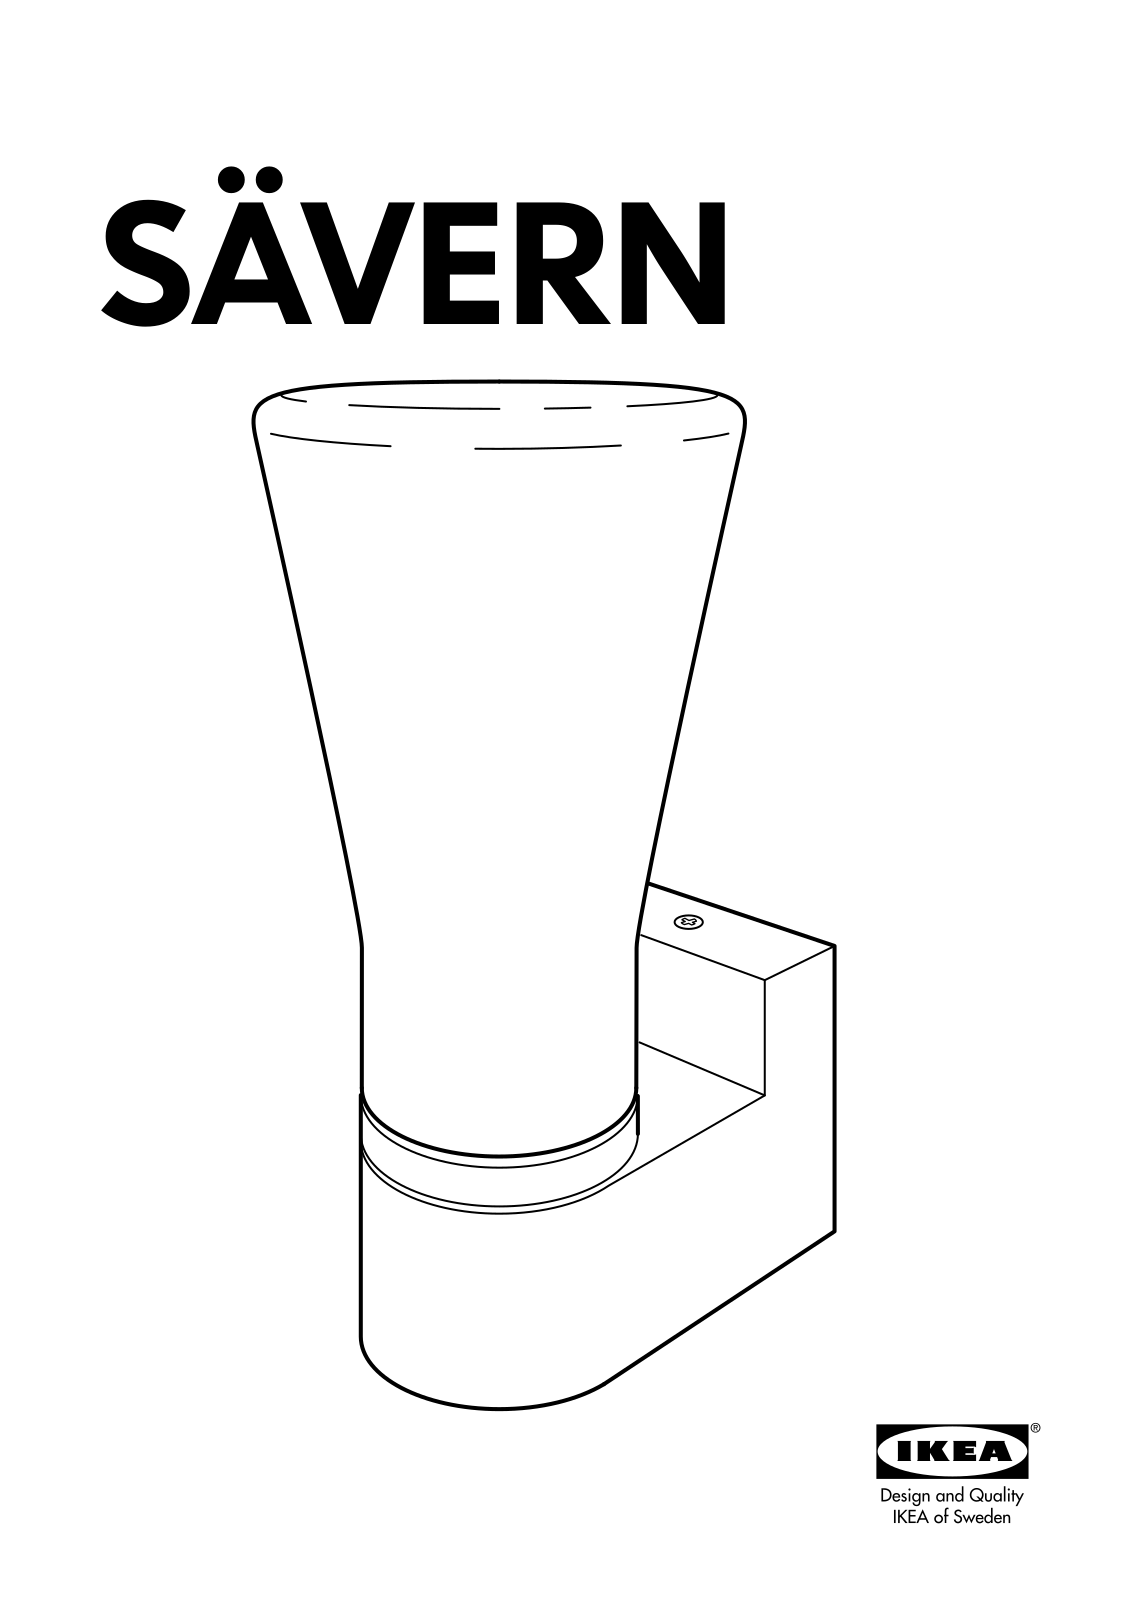 IKEA SAVERN User Manual